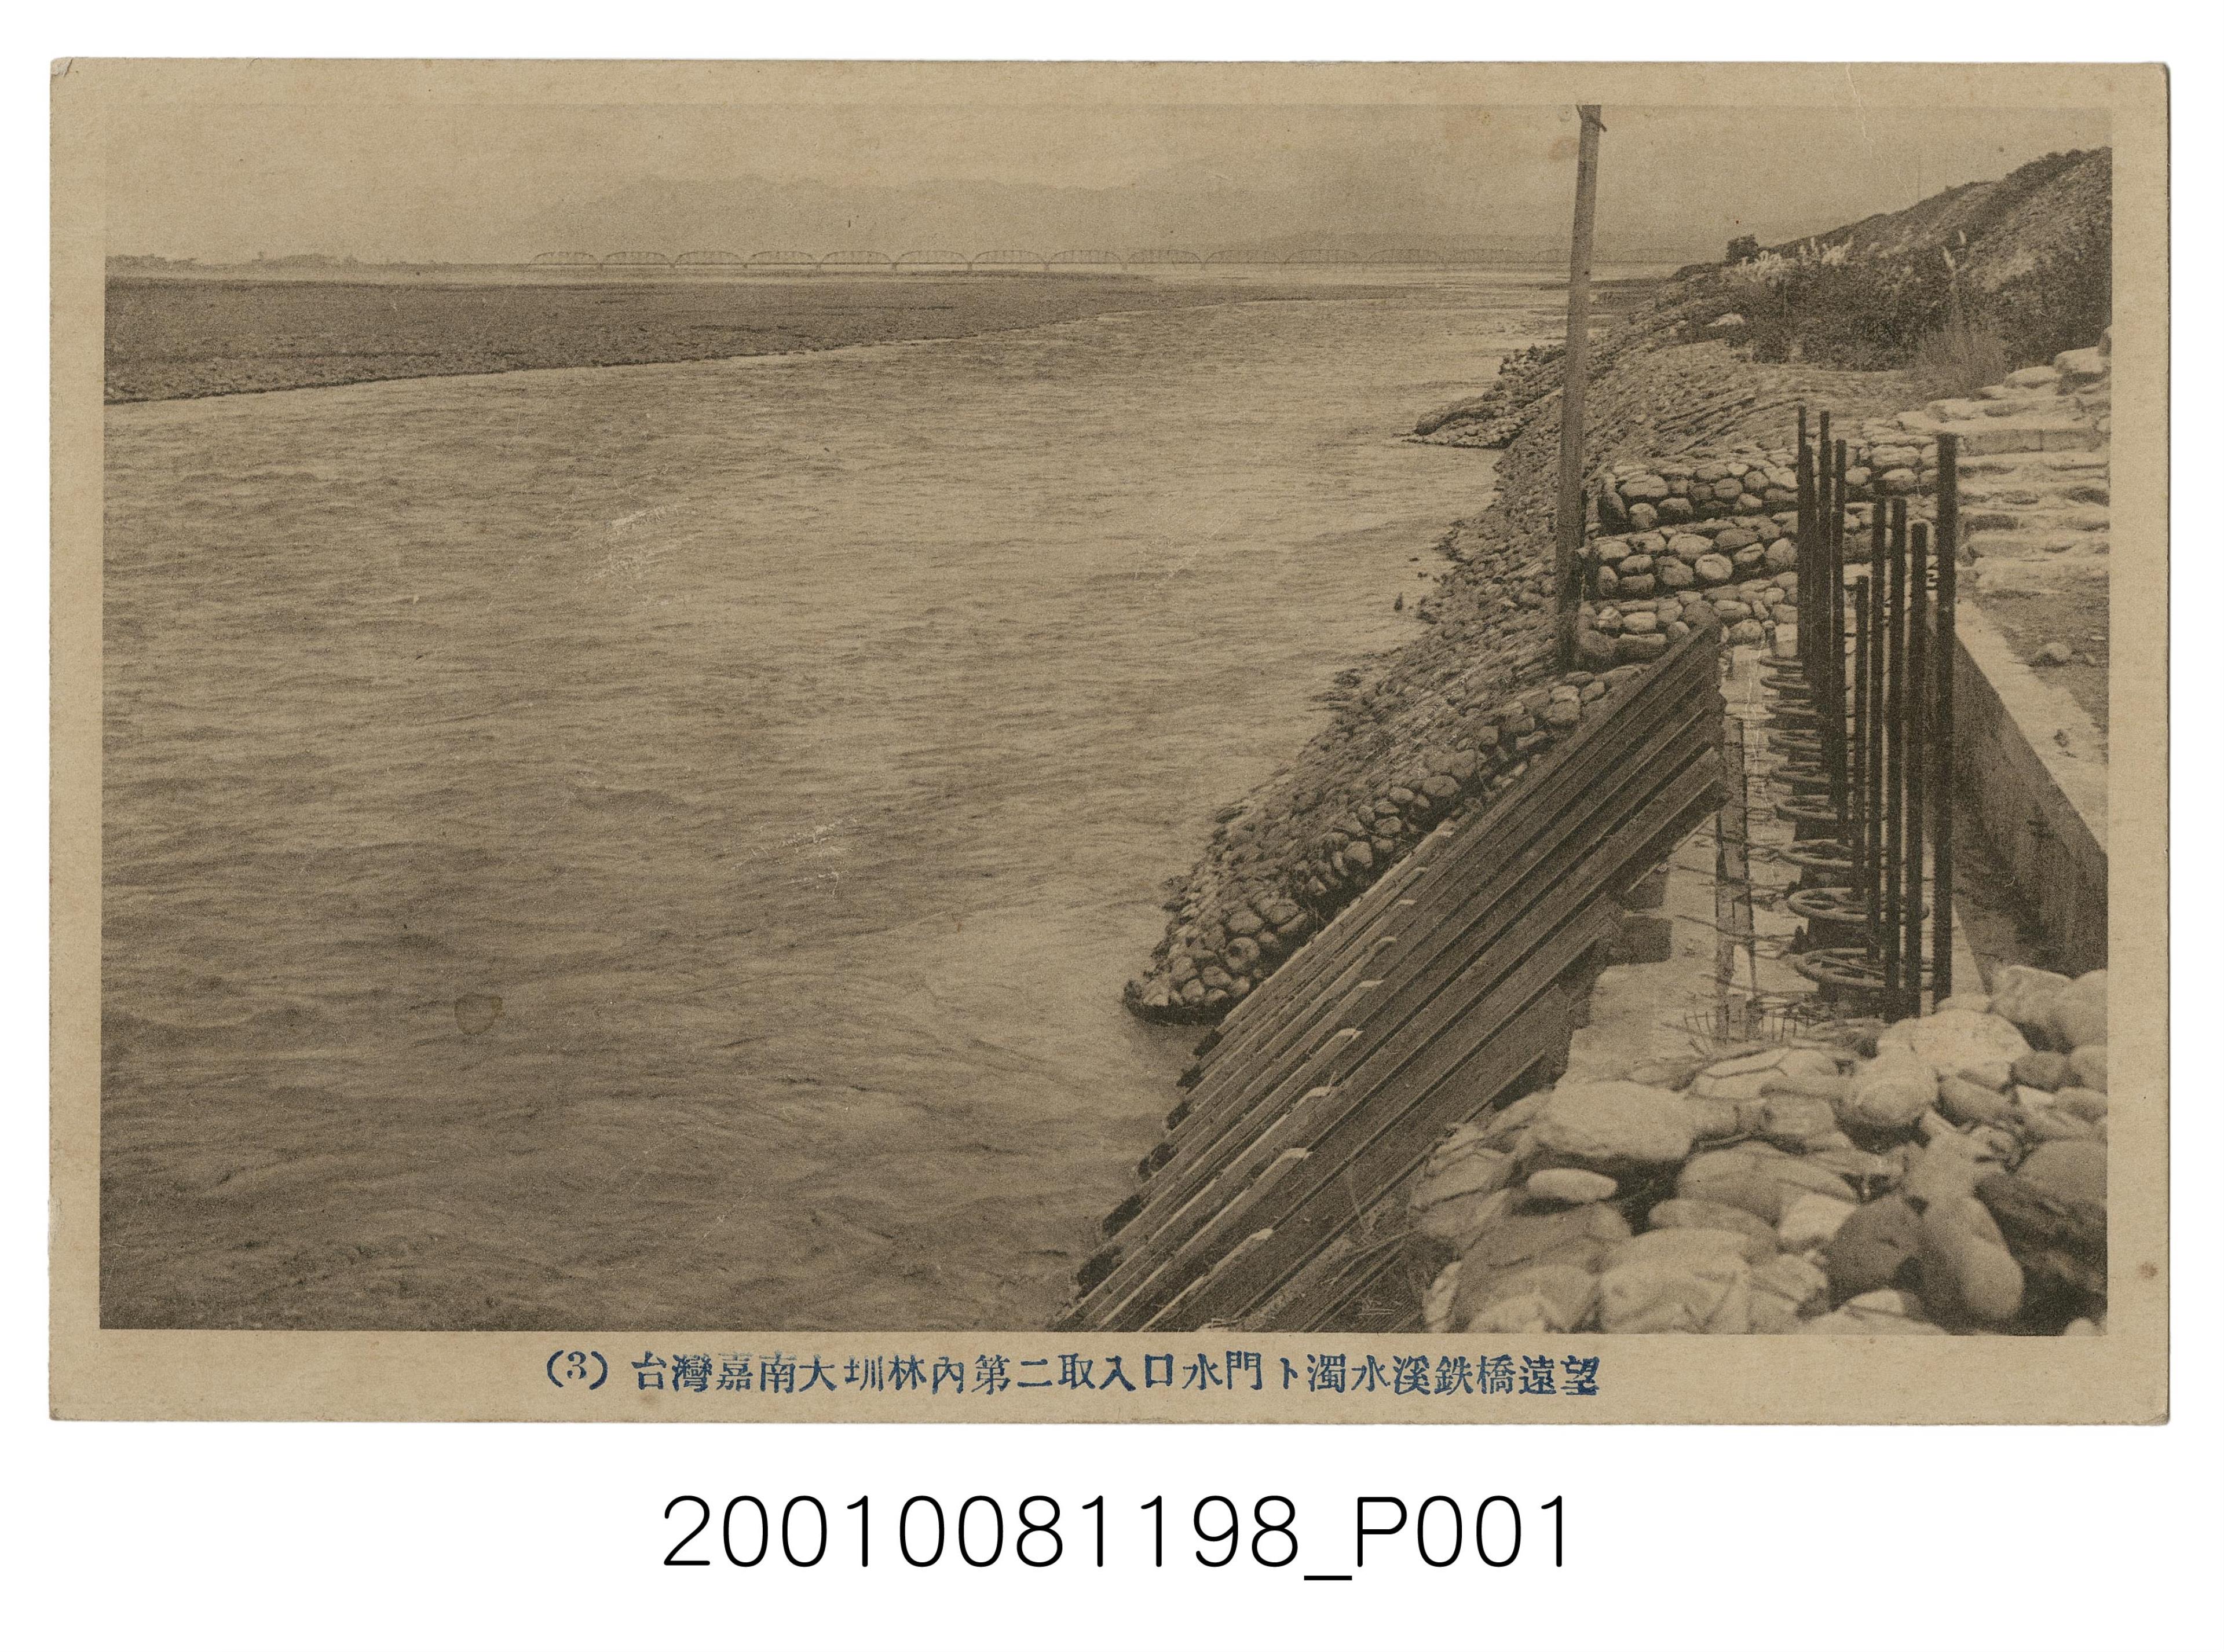 臺灣嘉南大圳林內第二取入口水門與遠望的濁水溪鐵橋 (共2張)